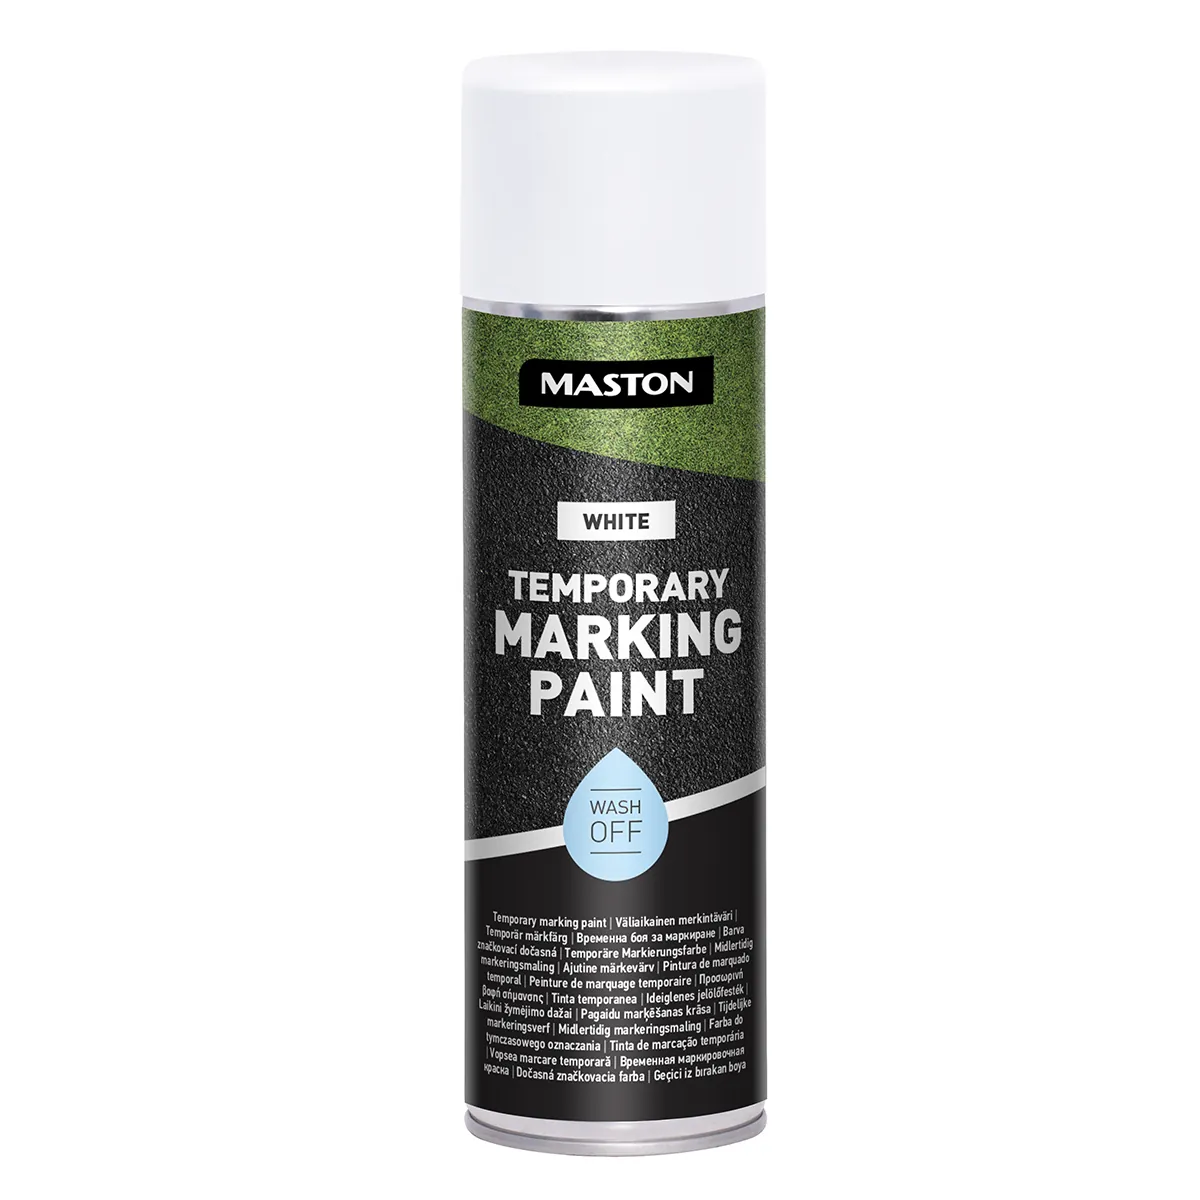 MASTON TEMPORARY MARKING PAINT spray marcaj temporar